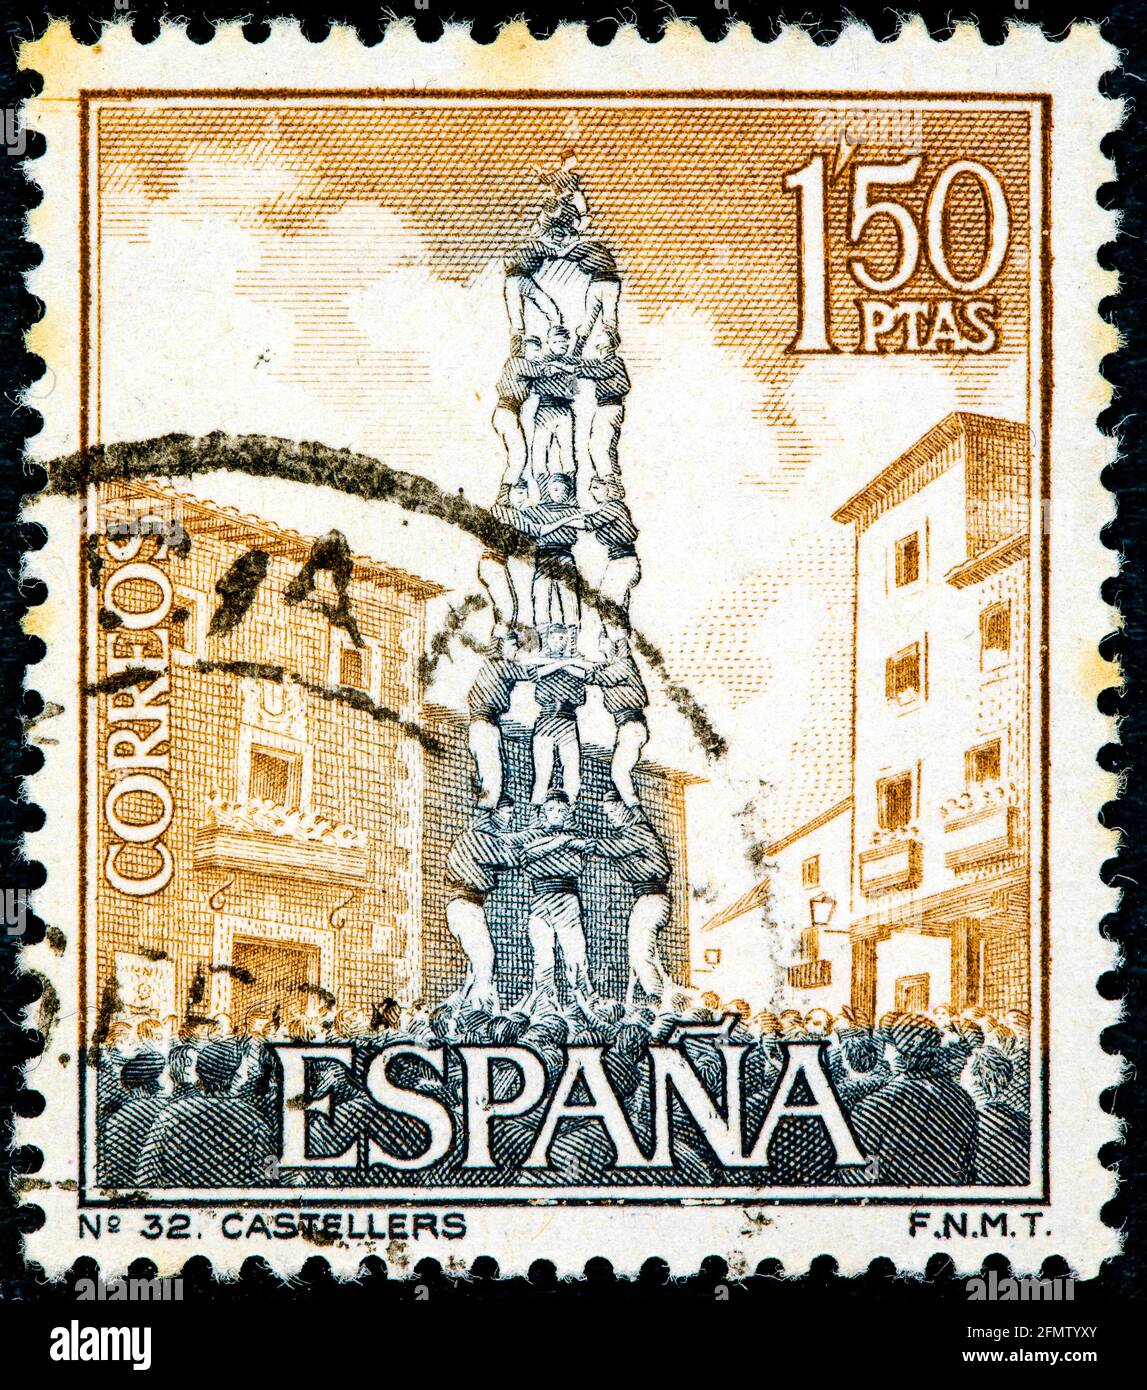 SPAGNA - CIRCA 1967: Un francobollo stampato in Spagna mostra castellers o castelli umani a Barcellona circa 1967 Foto Stock